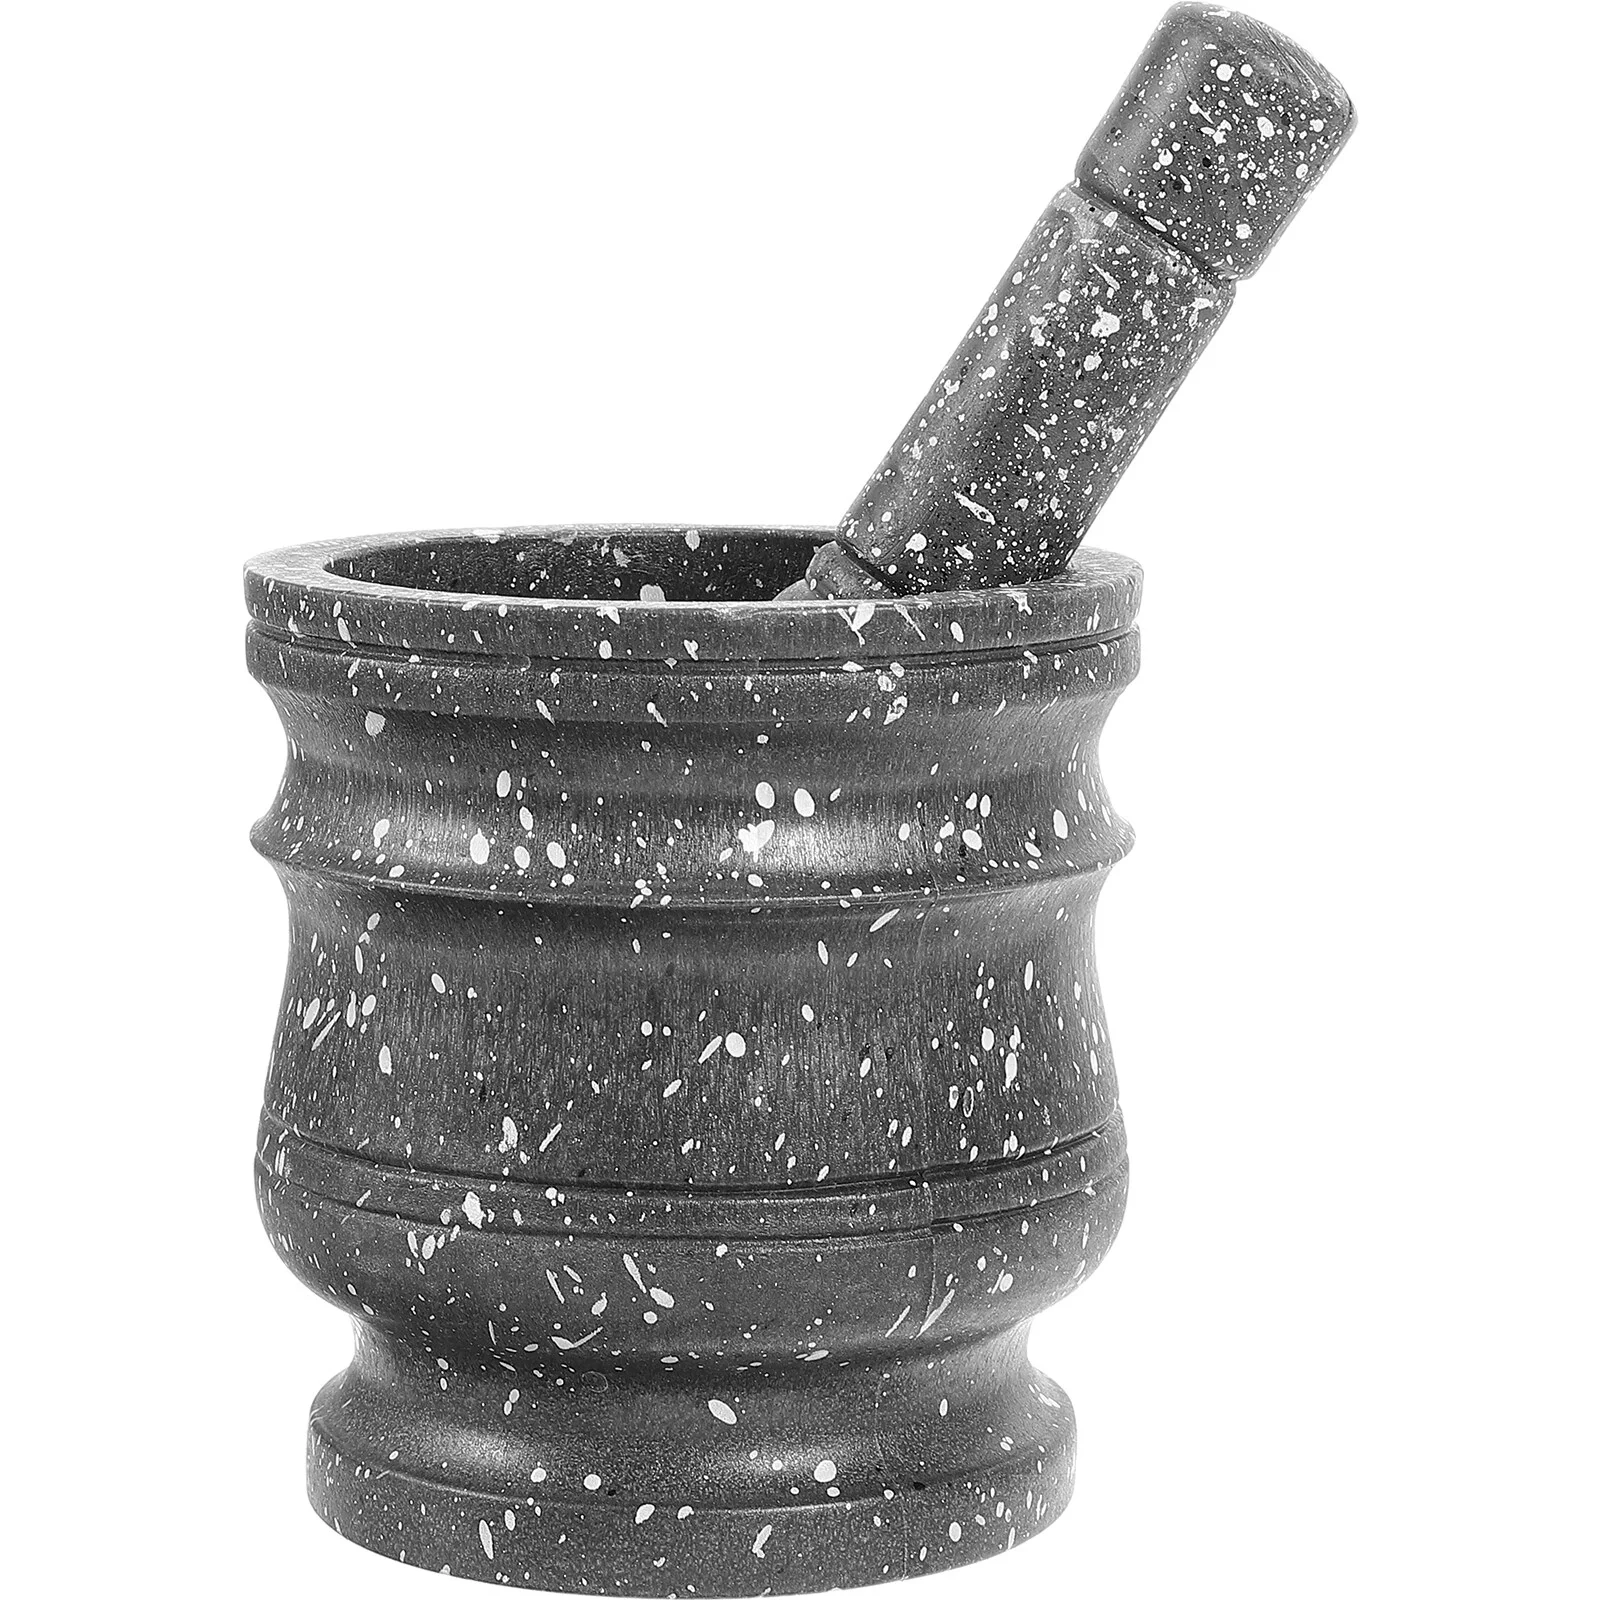 

Инструмент пестик каменная мельница специи раствор давить горшок Бытовая шлифовальная чаша